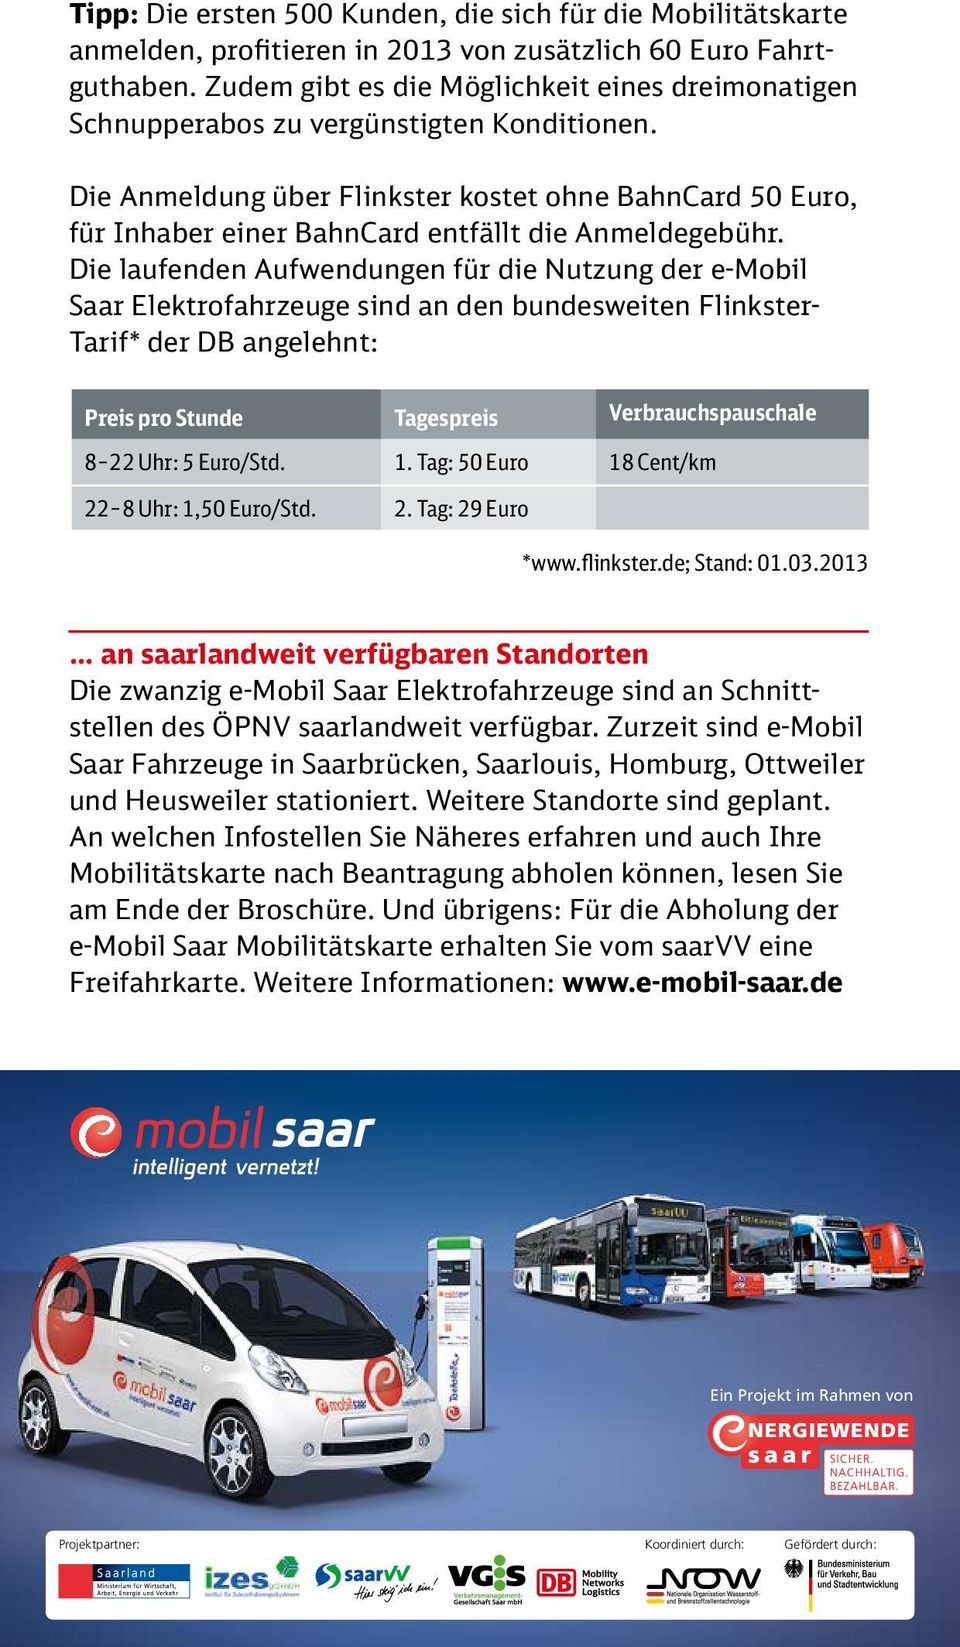 Die Anmeldung über Flinkster kostet ohne BahnCard 50 Euro, für Inhaber einer BahnCard entfällt die Anmeldegebühr.